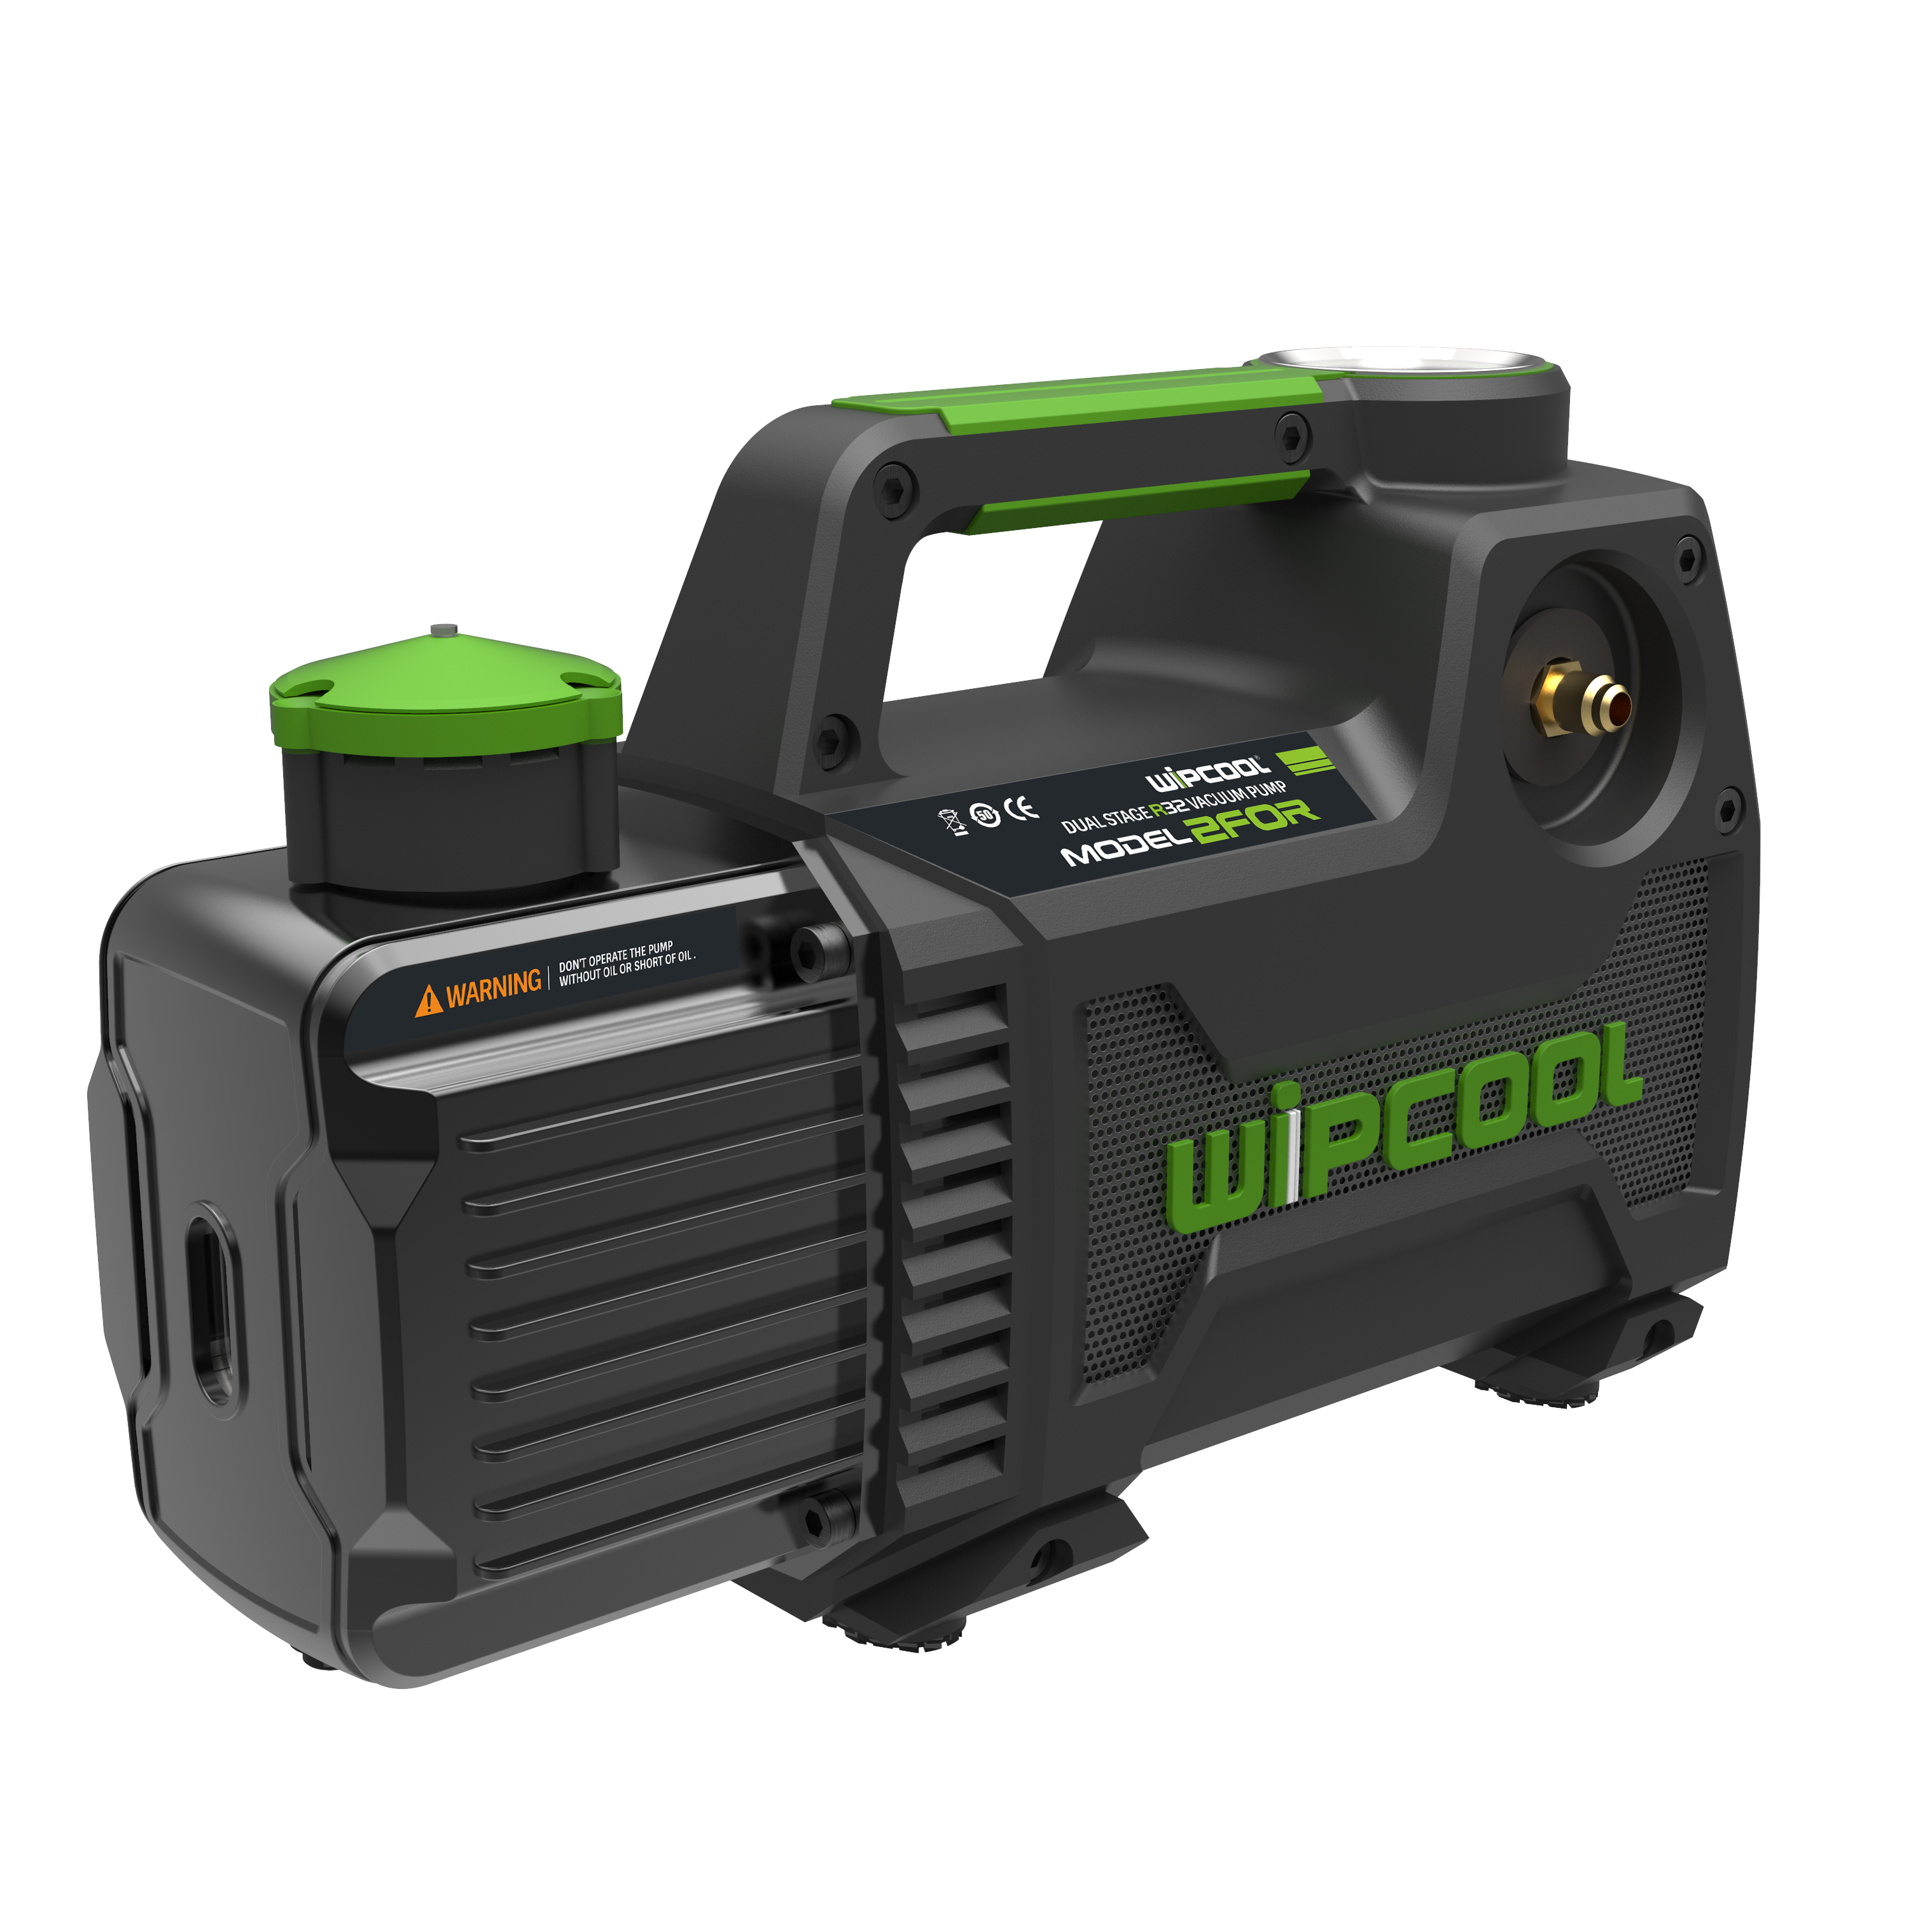 WIPCOOL 240V Series, 45 L/min, 2-stage Vacuum Pump - R32 Compliant